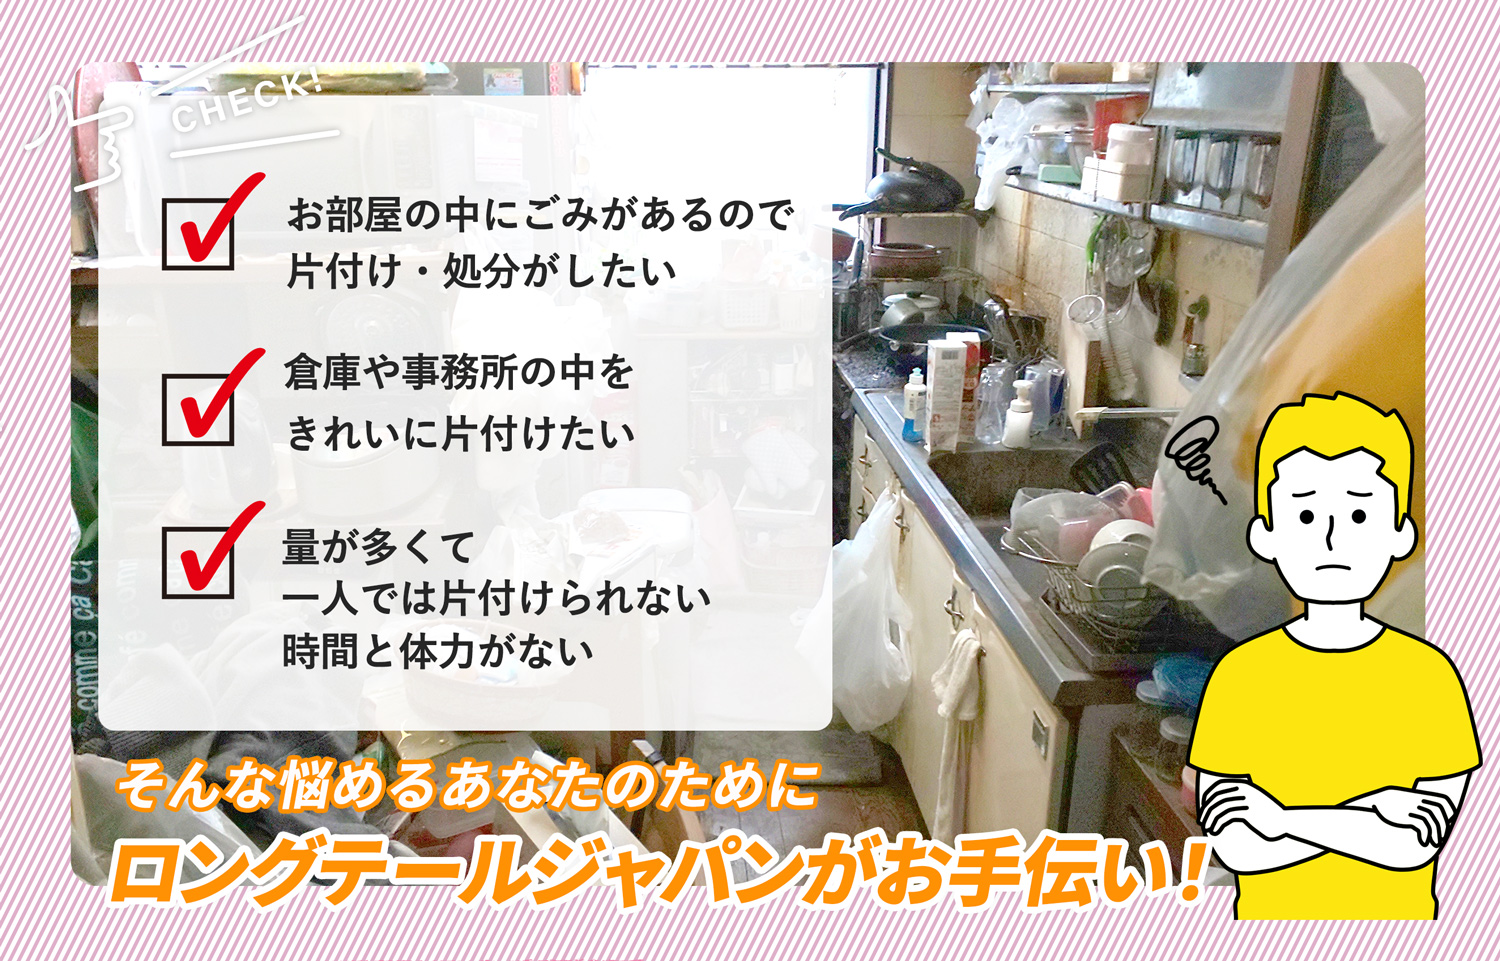 平塚市でお部屋の中から店舗、事務所、倉庫まで自分達で片付けられない場合はお部屋の片付け隊がやらせていただきます。